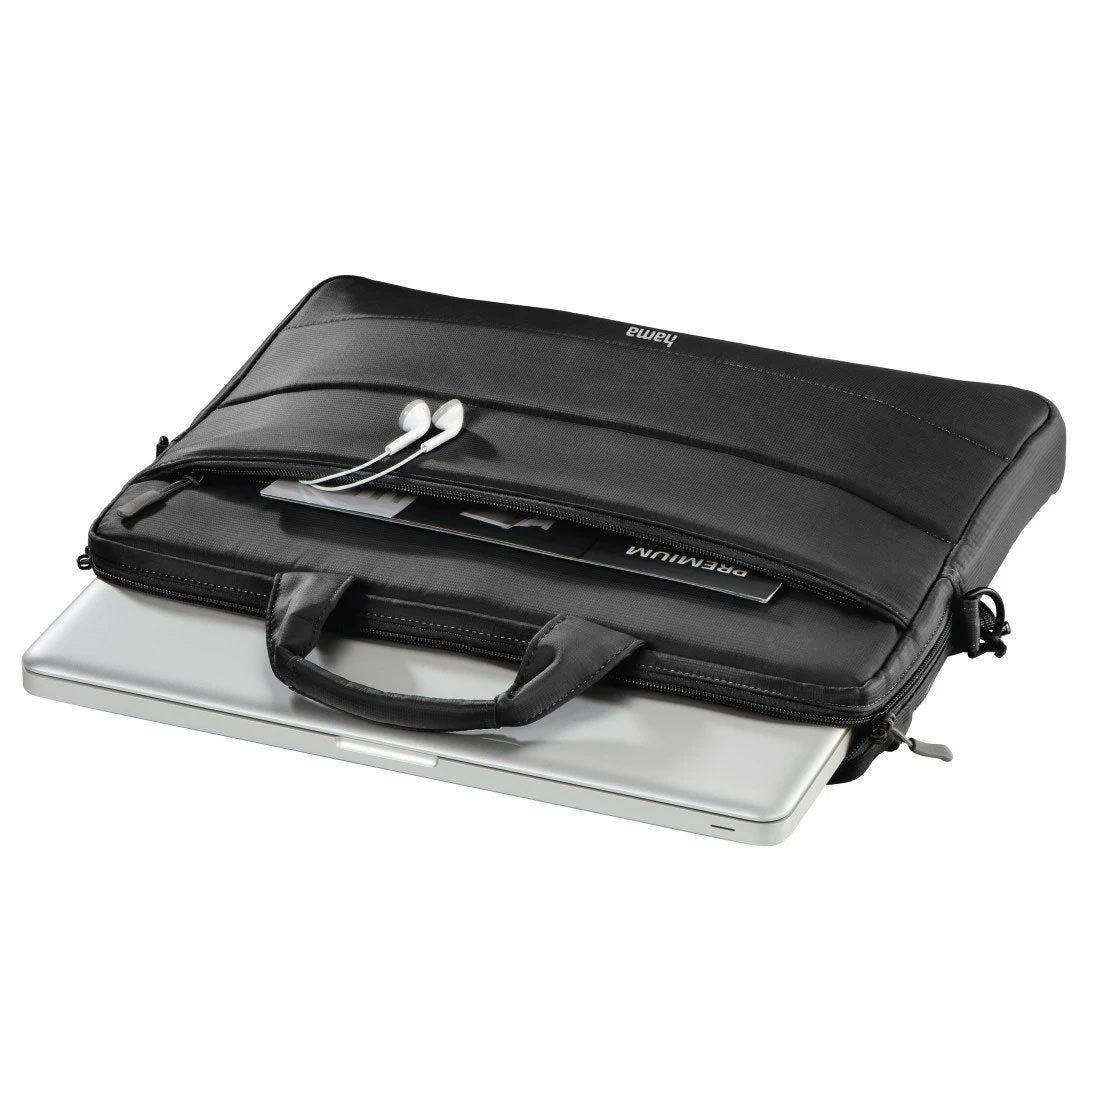 Geanta Laptop Hama Toronto 15.6’ pana la 40 cm Black - 2165650000 - 4047443467775 - 4